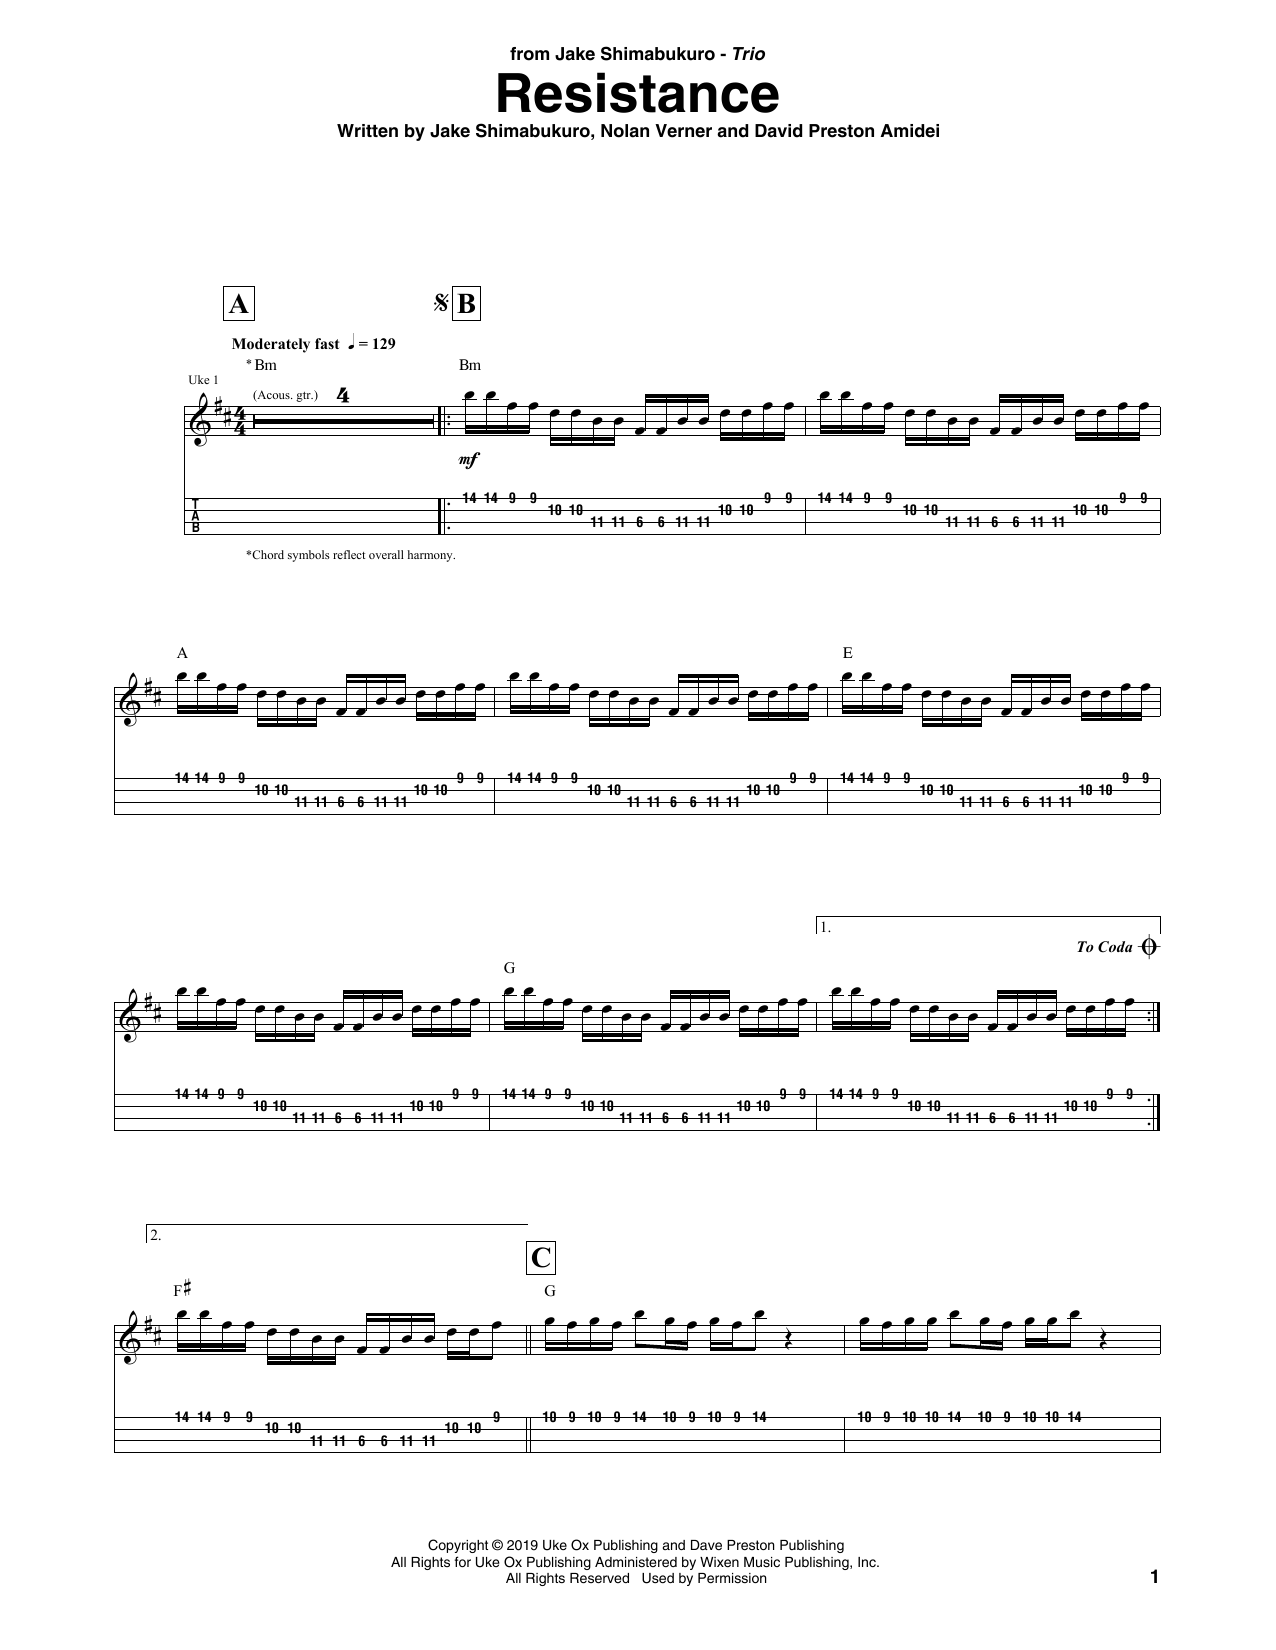 Jake Shimabukuro Trio Resistance Sheet Music Notes & Chords for Ukulele Tab - Download or Print PDF